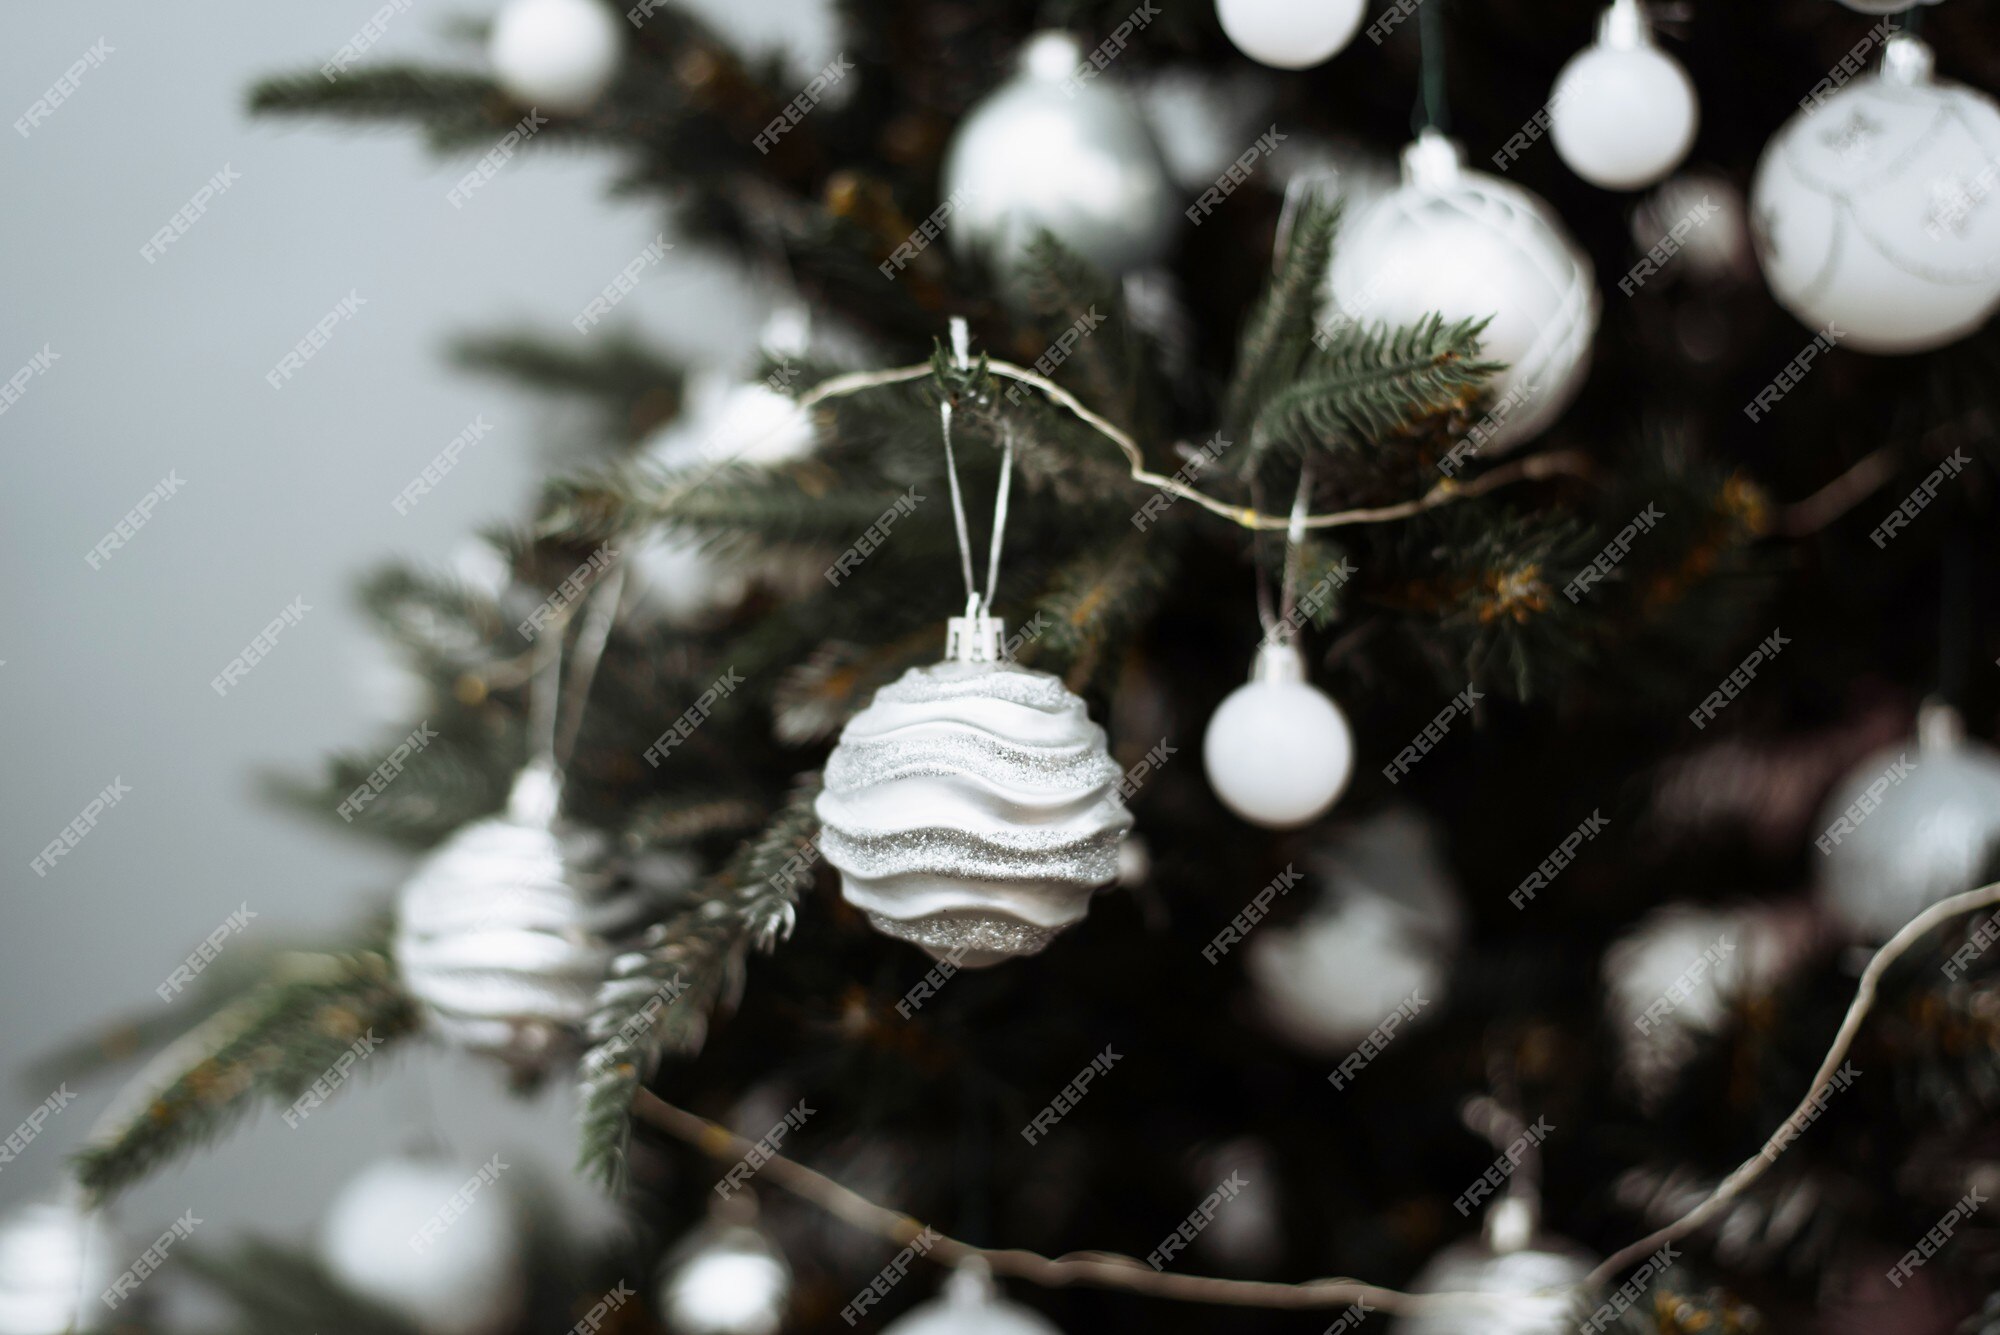 Galho de árvore de natal decorado com bolas de prata e festão branca. |  Foto Premium